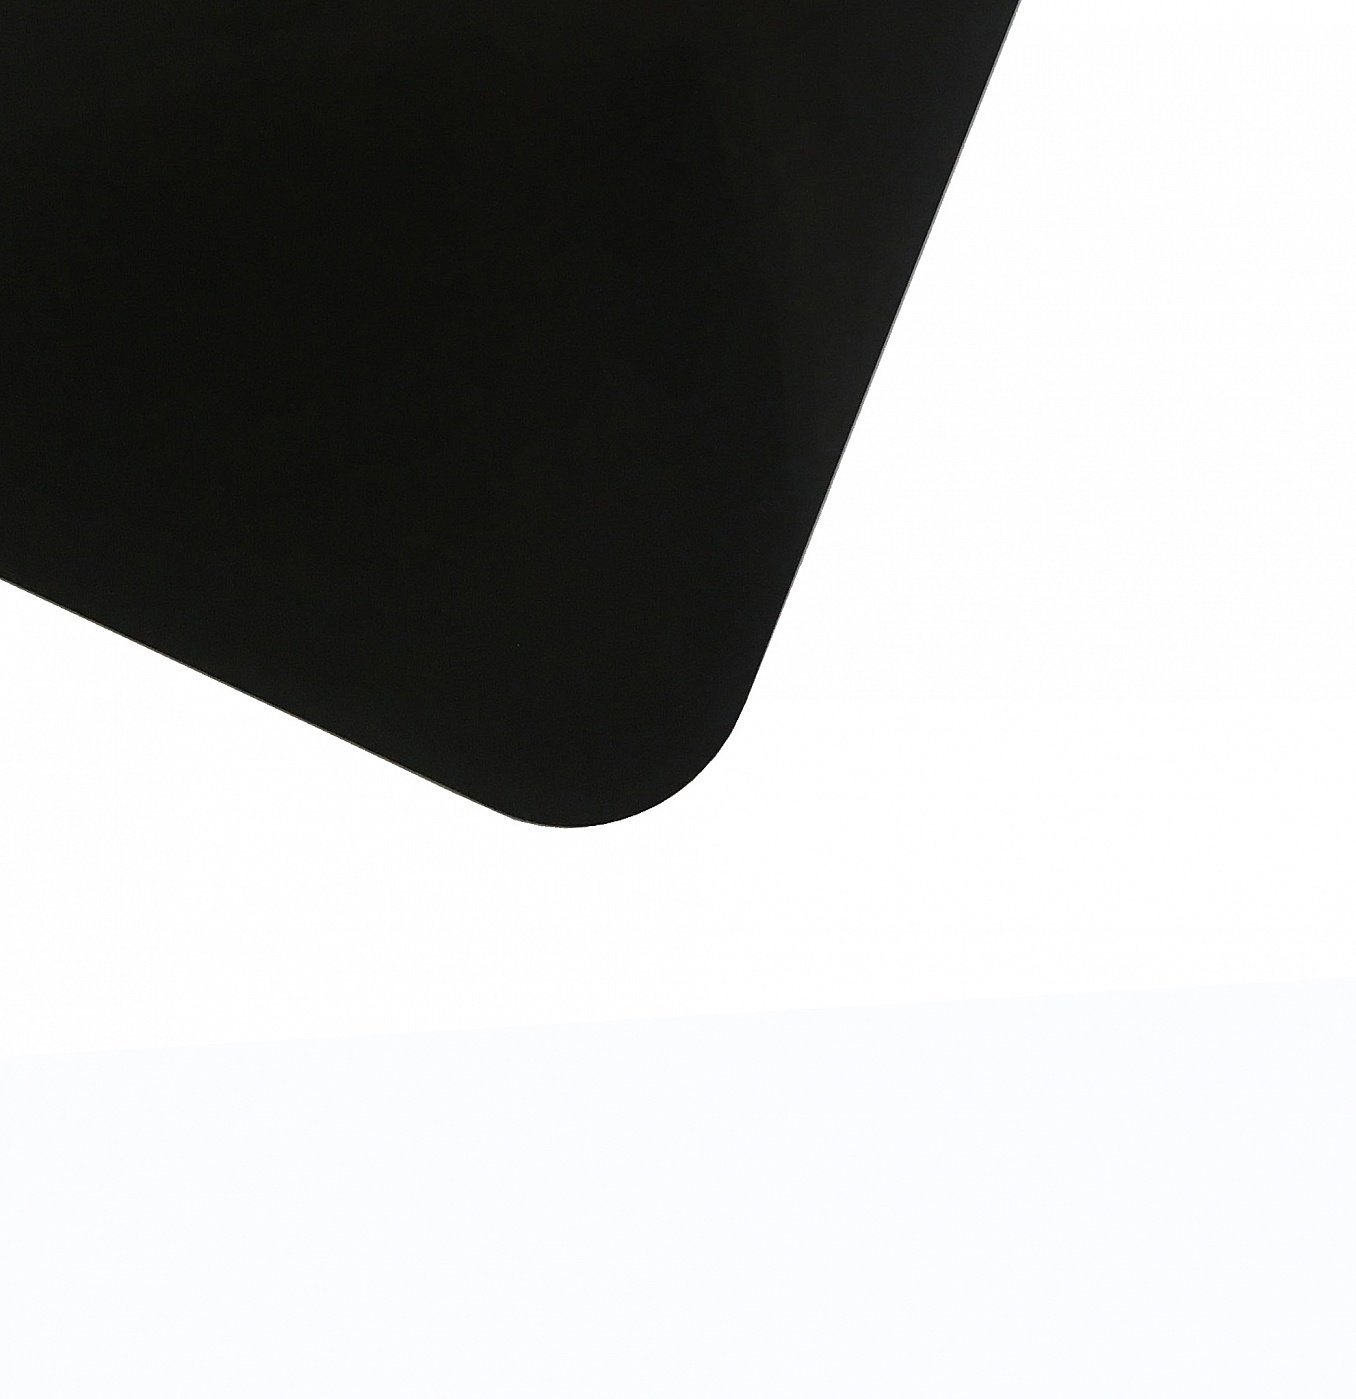 Планшет для пленэра из оргстекла 3 мм, под лист размера А4, цвет черный